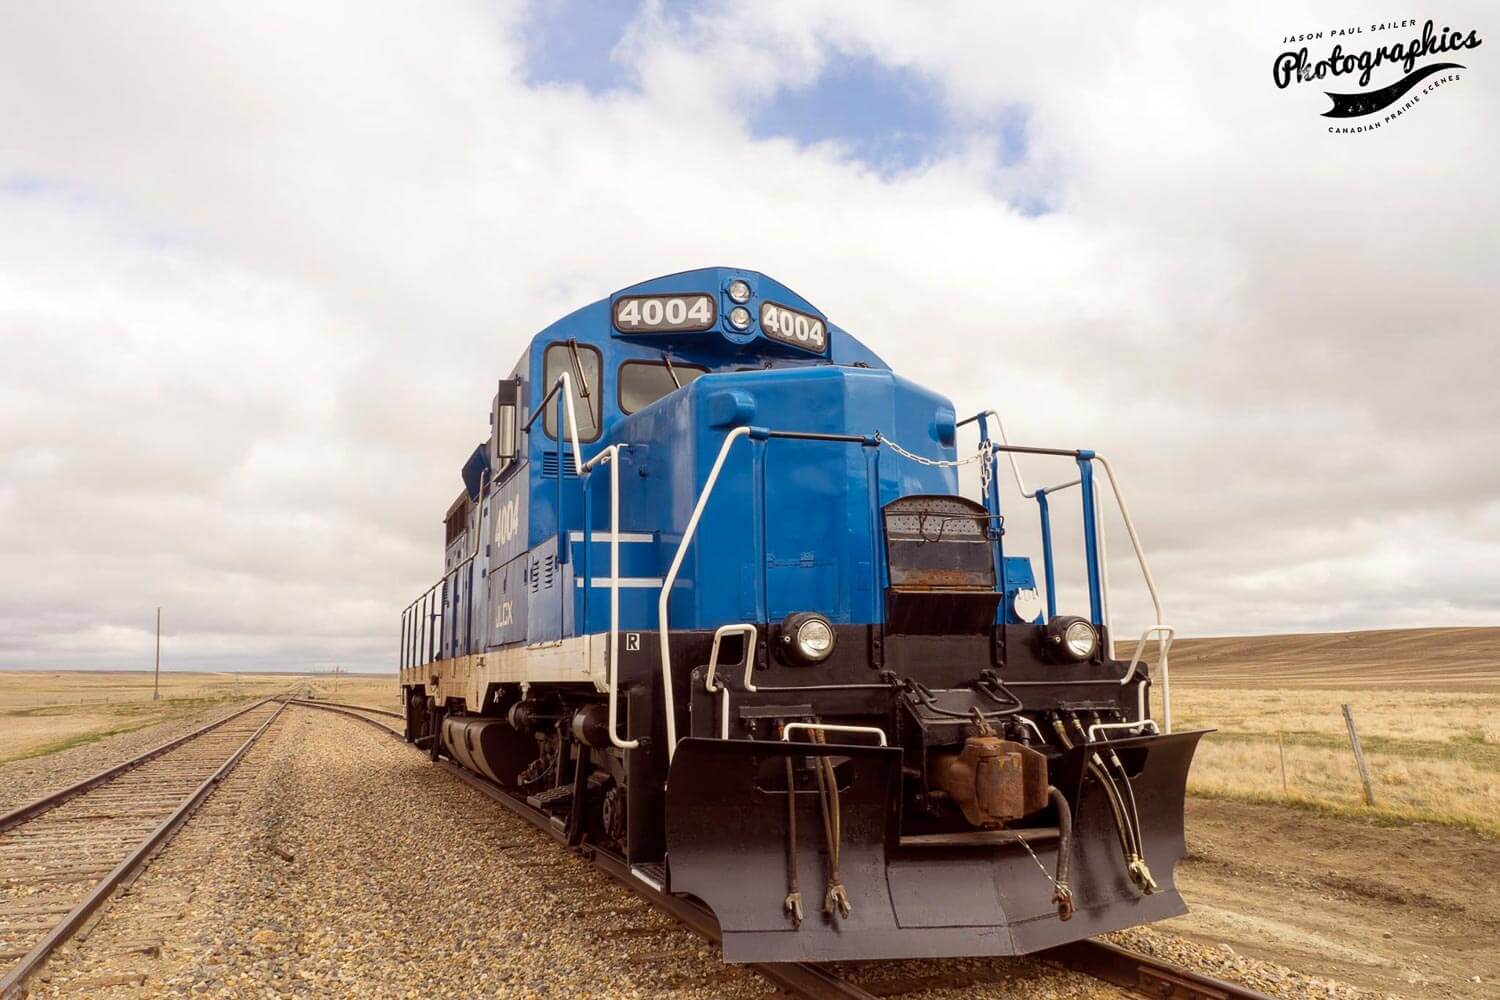 Blue train sitting on a track